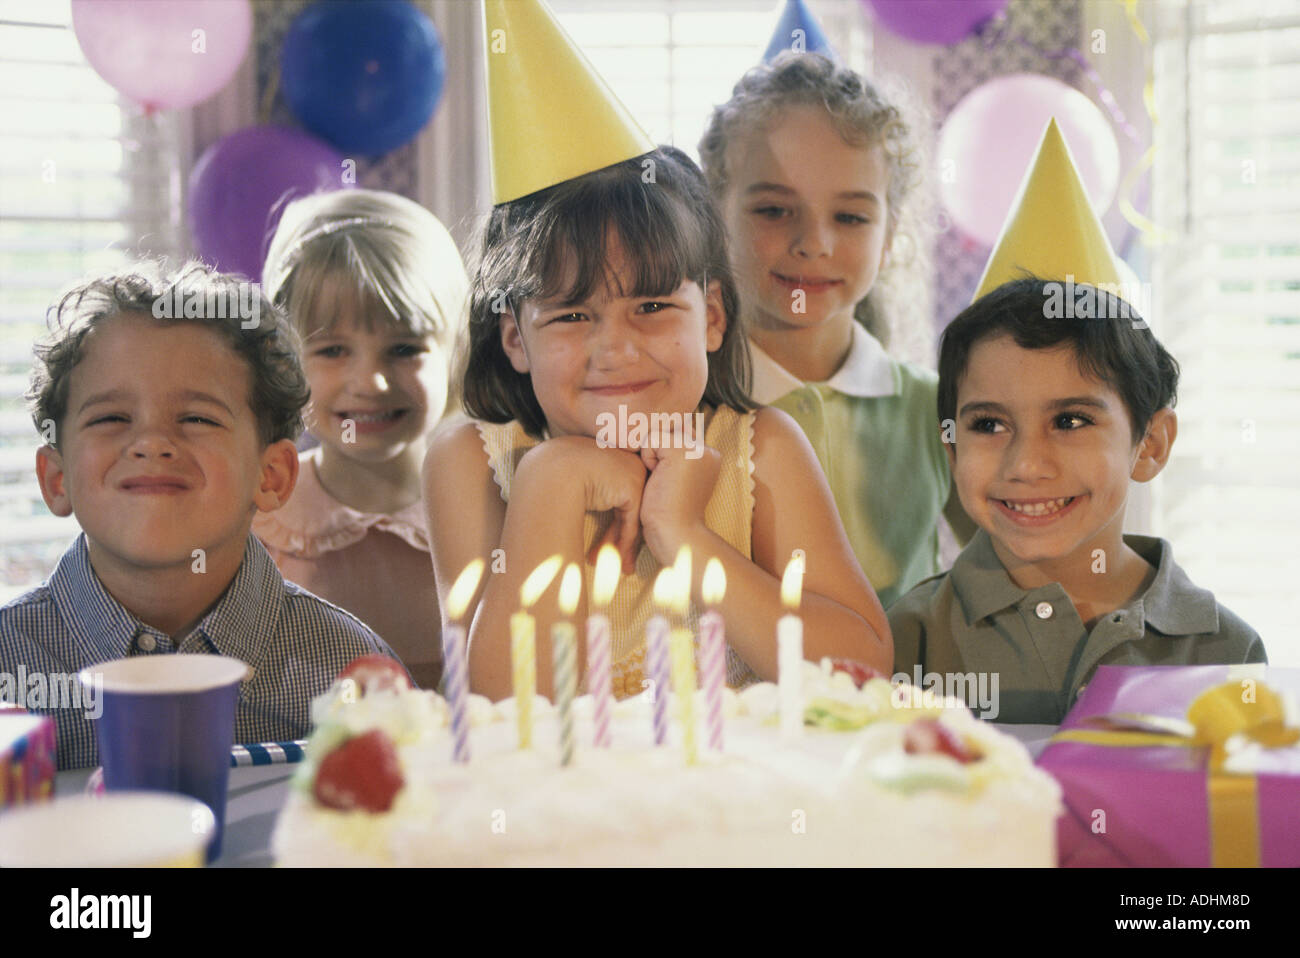 Скучные праздники. Детский день рождения. Праздник мальчиков и девочек. Детский день рождения в ресторане. День рождения ребенка в кругу семьи фото.